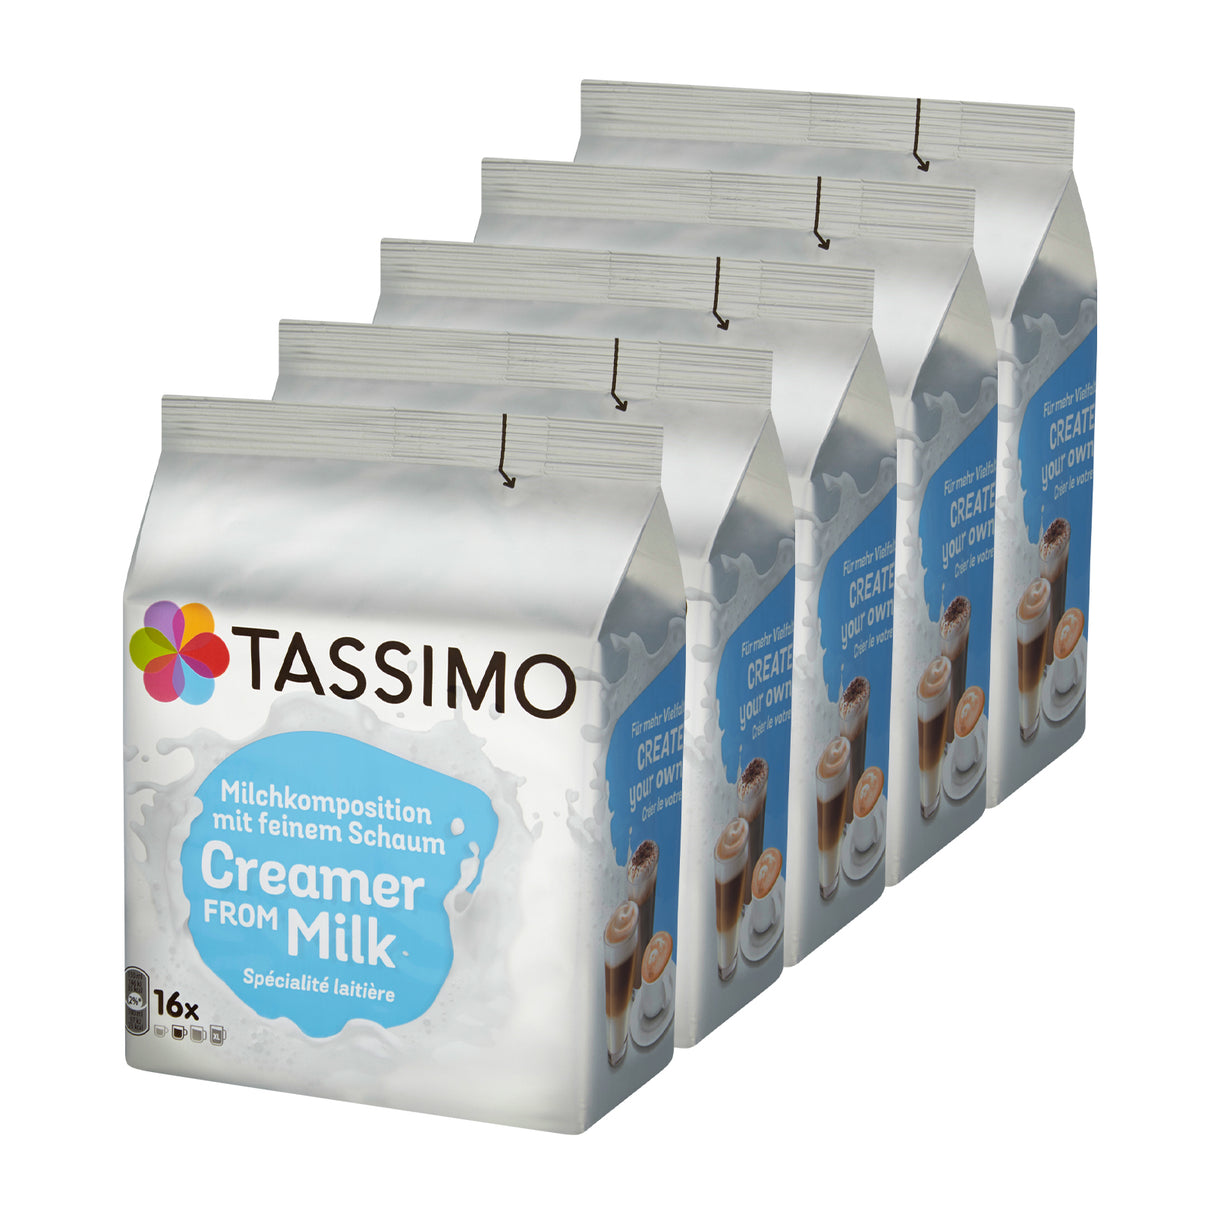 Tassimo Creamer From Milk Pods 5pack